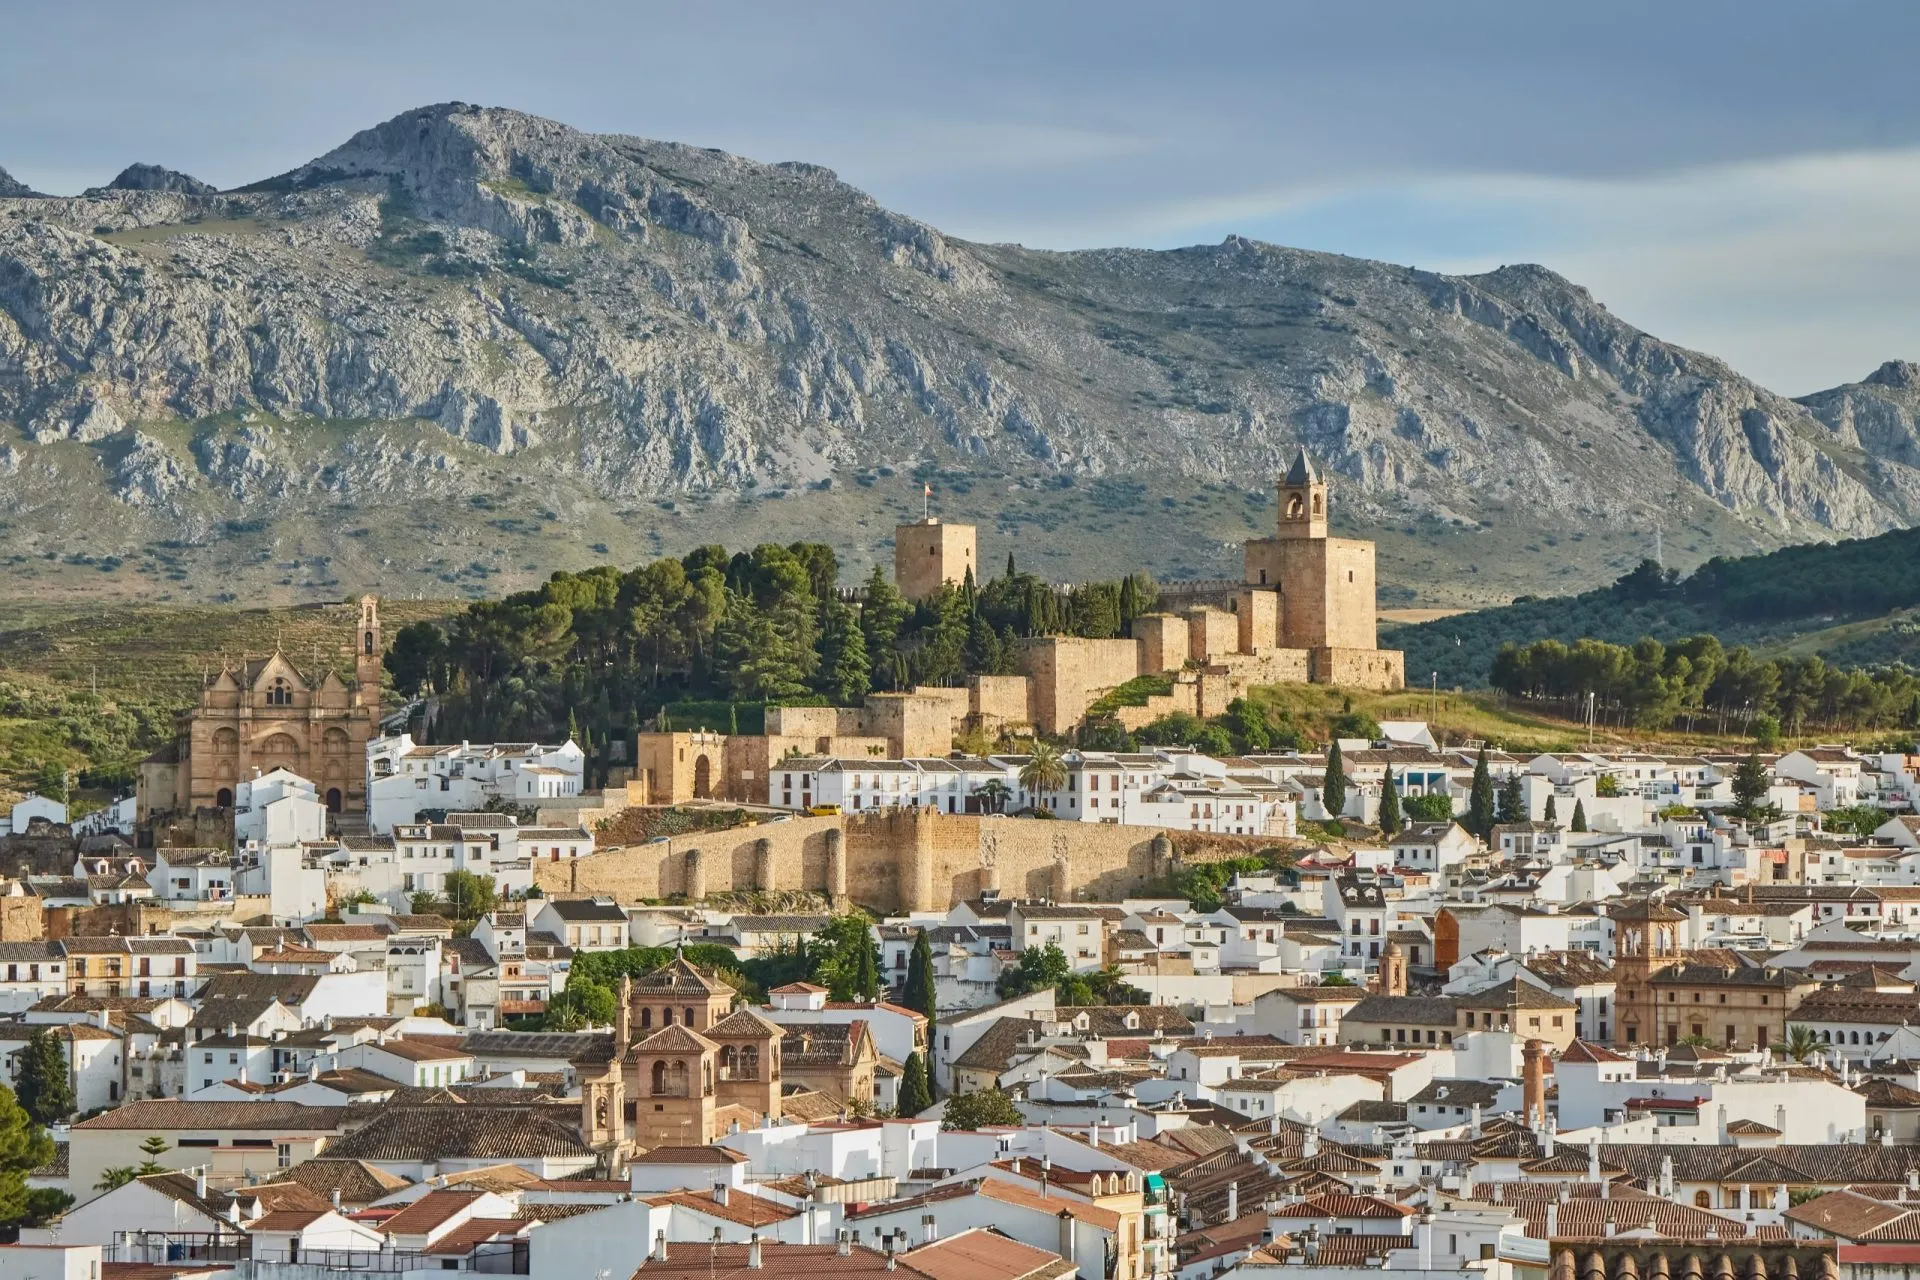 Il villaggio di Antequera a Malaga, Spagna